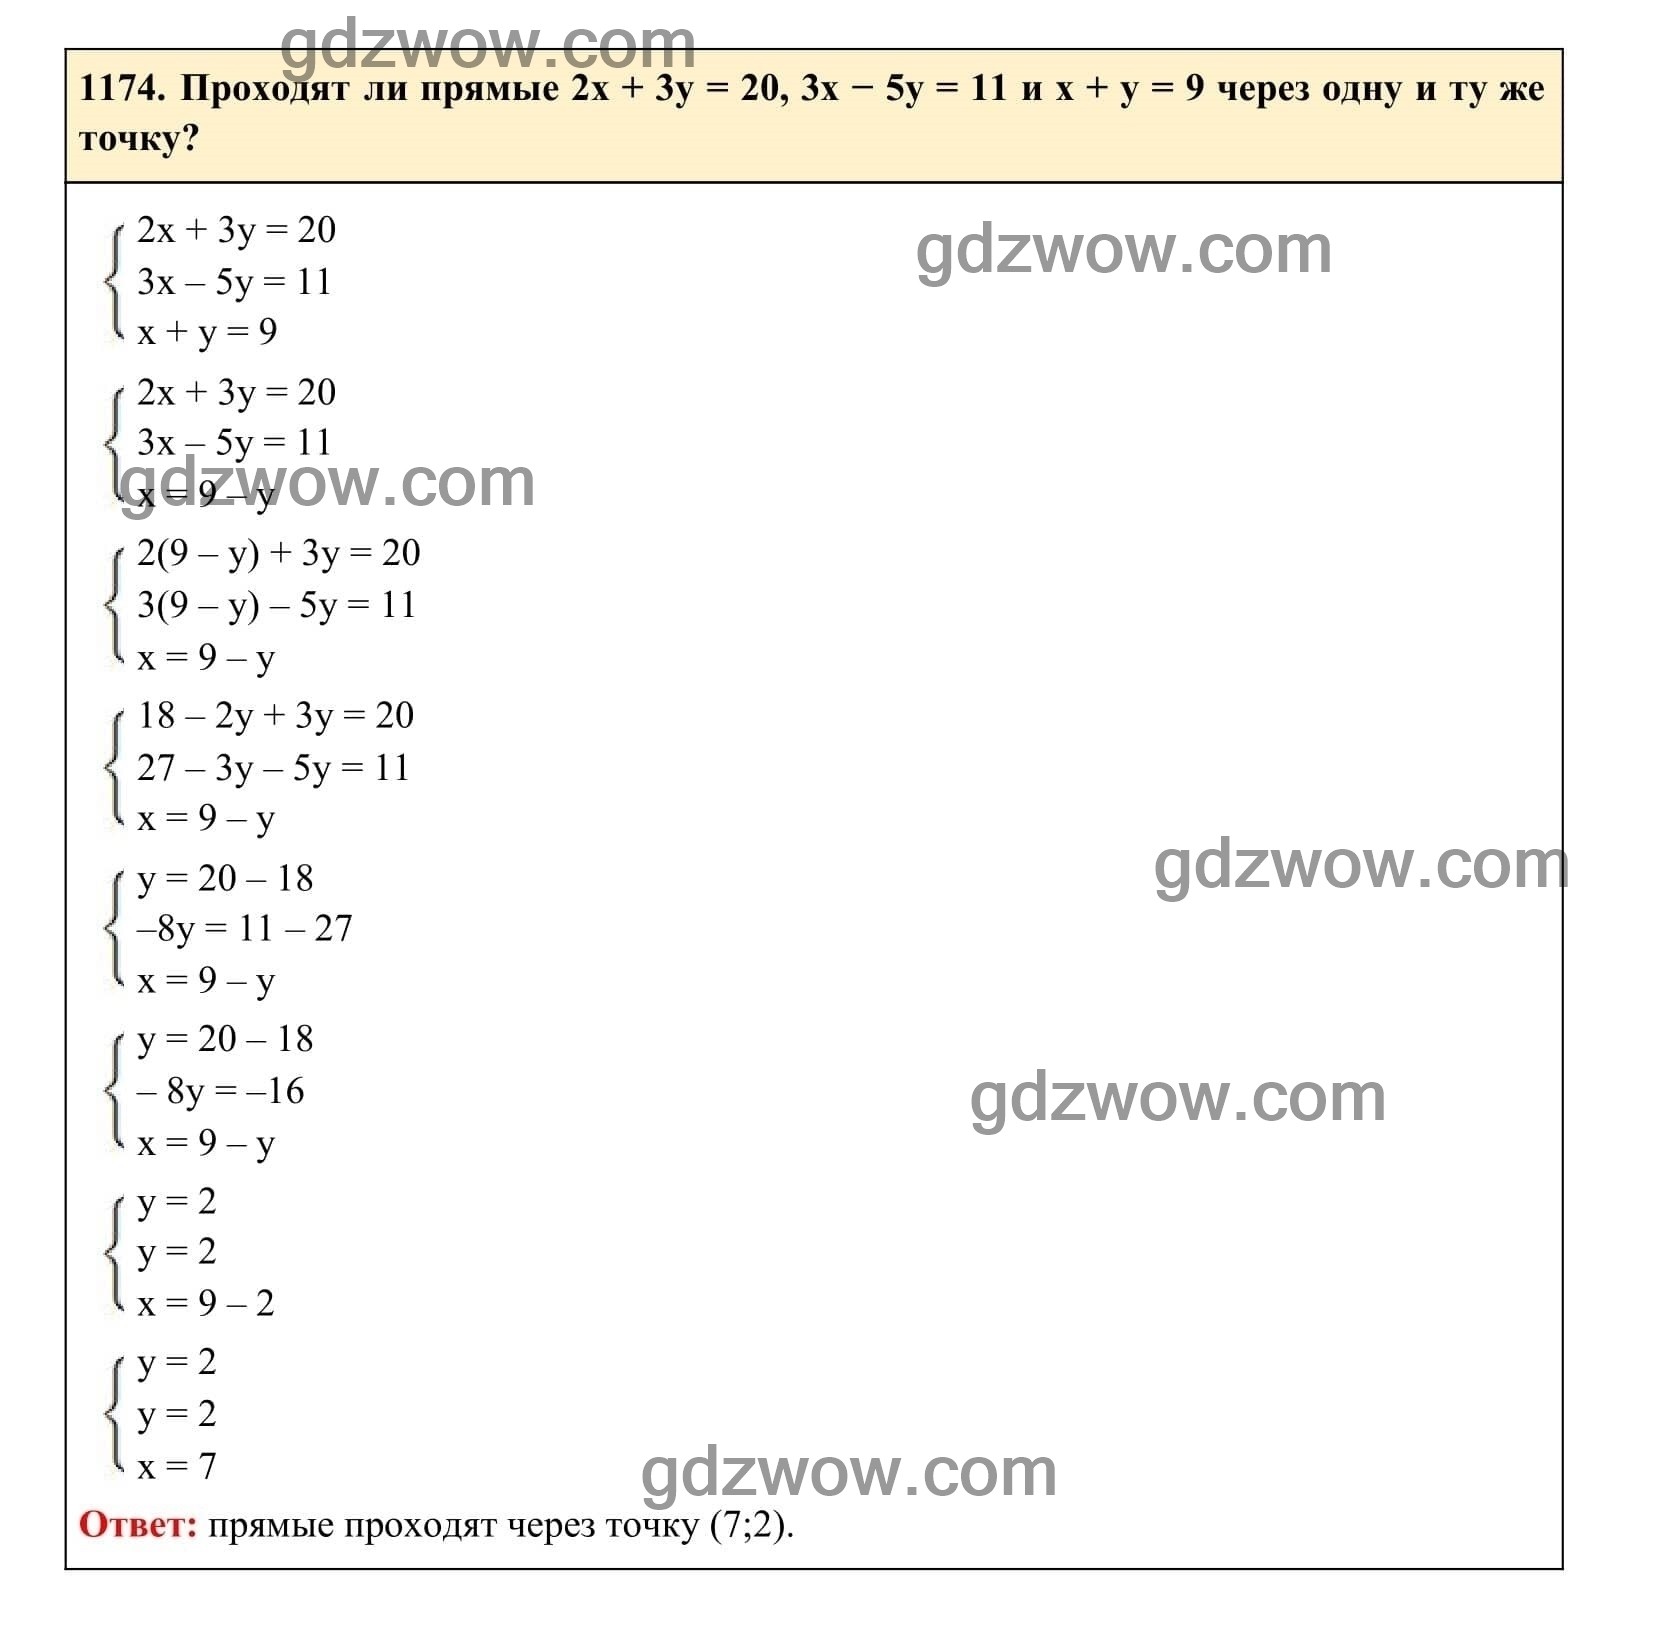 Упражнение 1174 - ГДЗ по Алгебре 7 класс Учебник Макарычев (решебник) - GDZwow